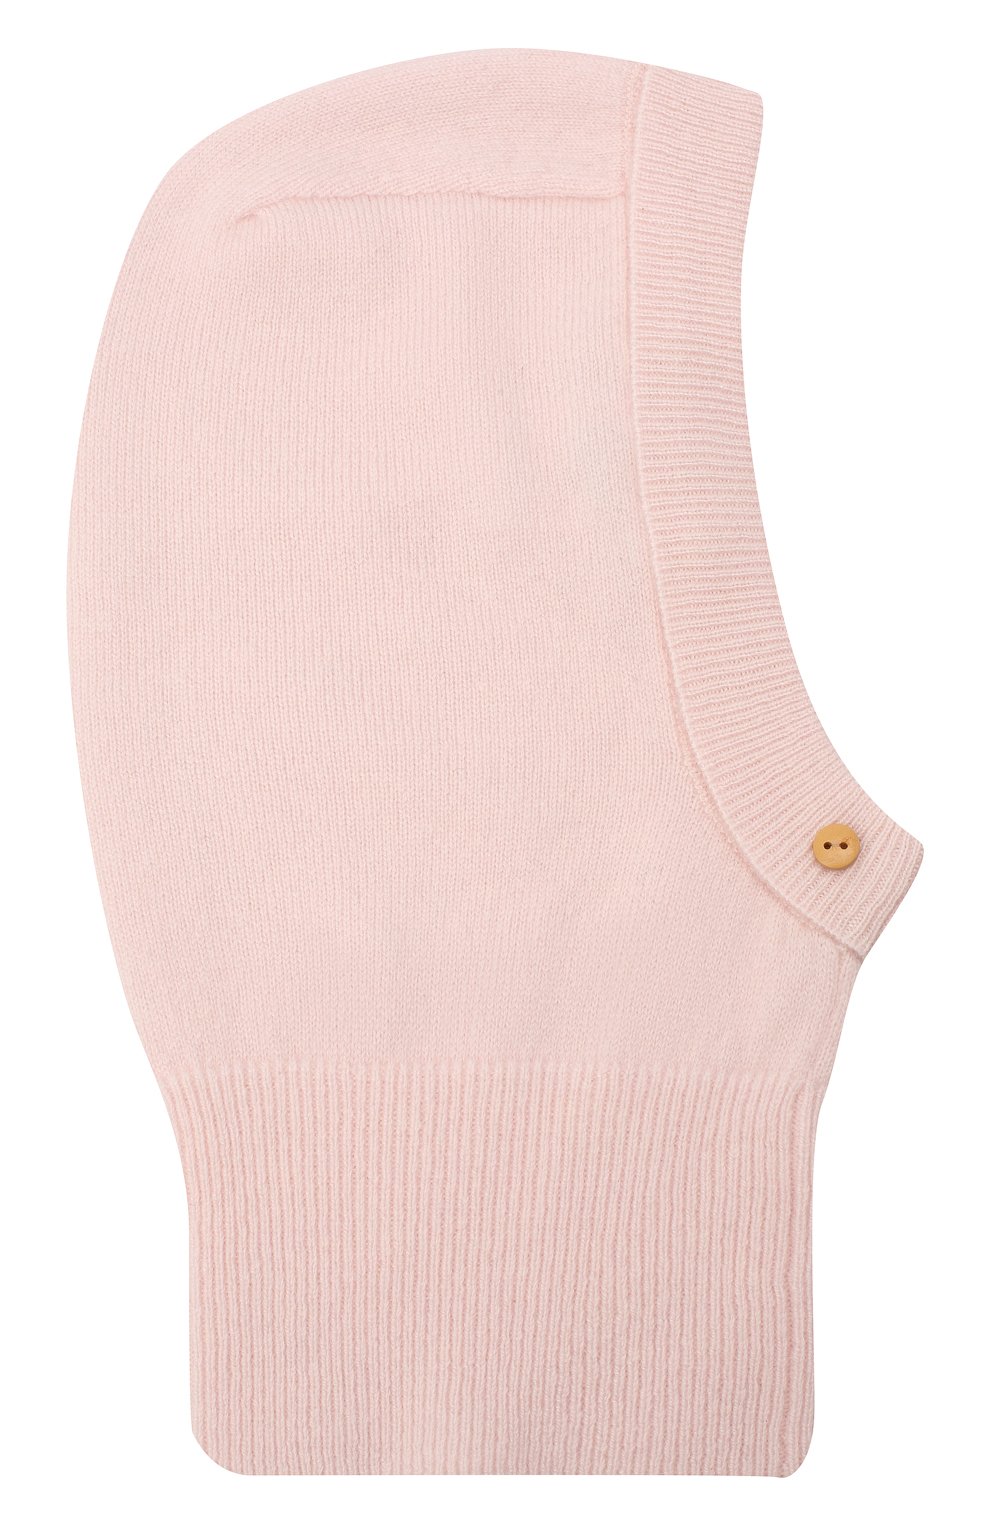 Детского кашемировая шапка-балаклава LES LUTINS PARIS светло-розового цвета, арт. 20H029/CALIXTE | Фото 1 (Материал: Текстиль, Кашемир, Шерсть)